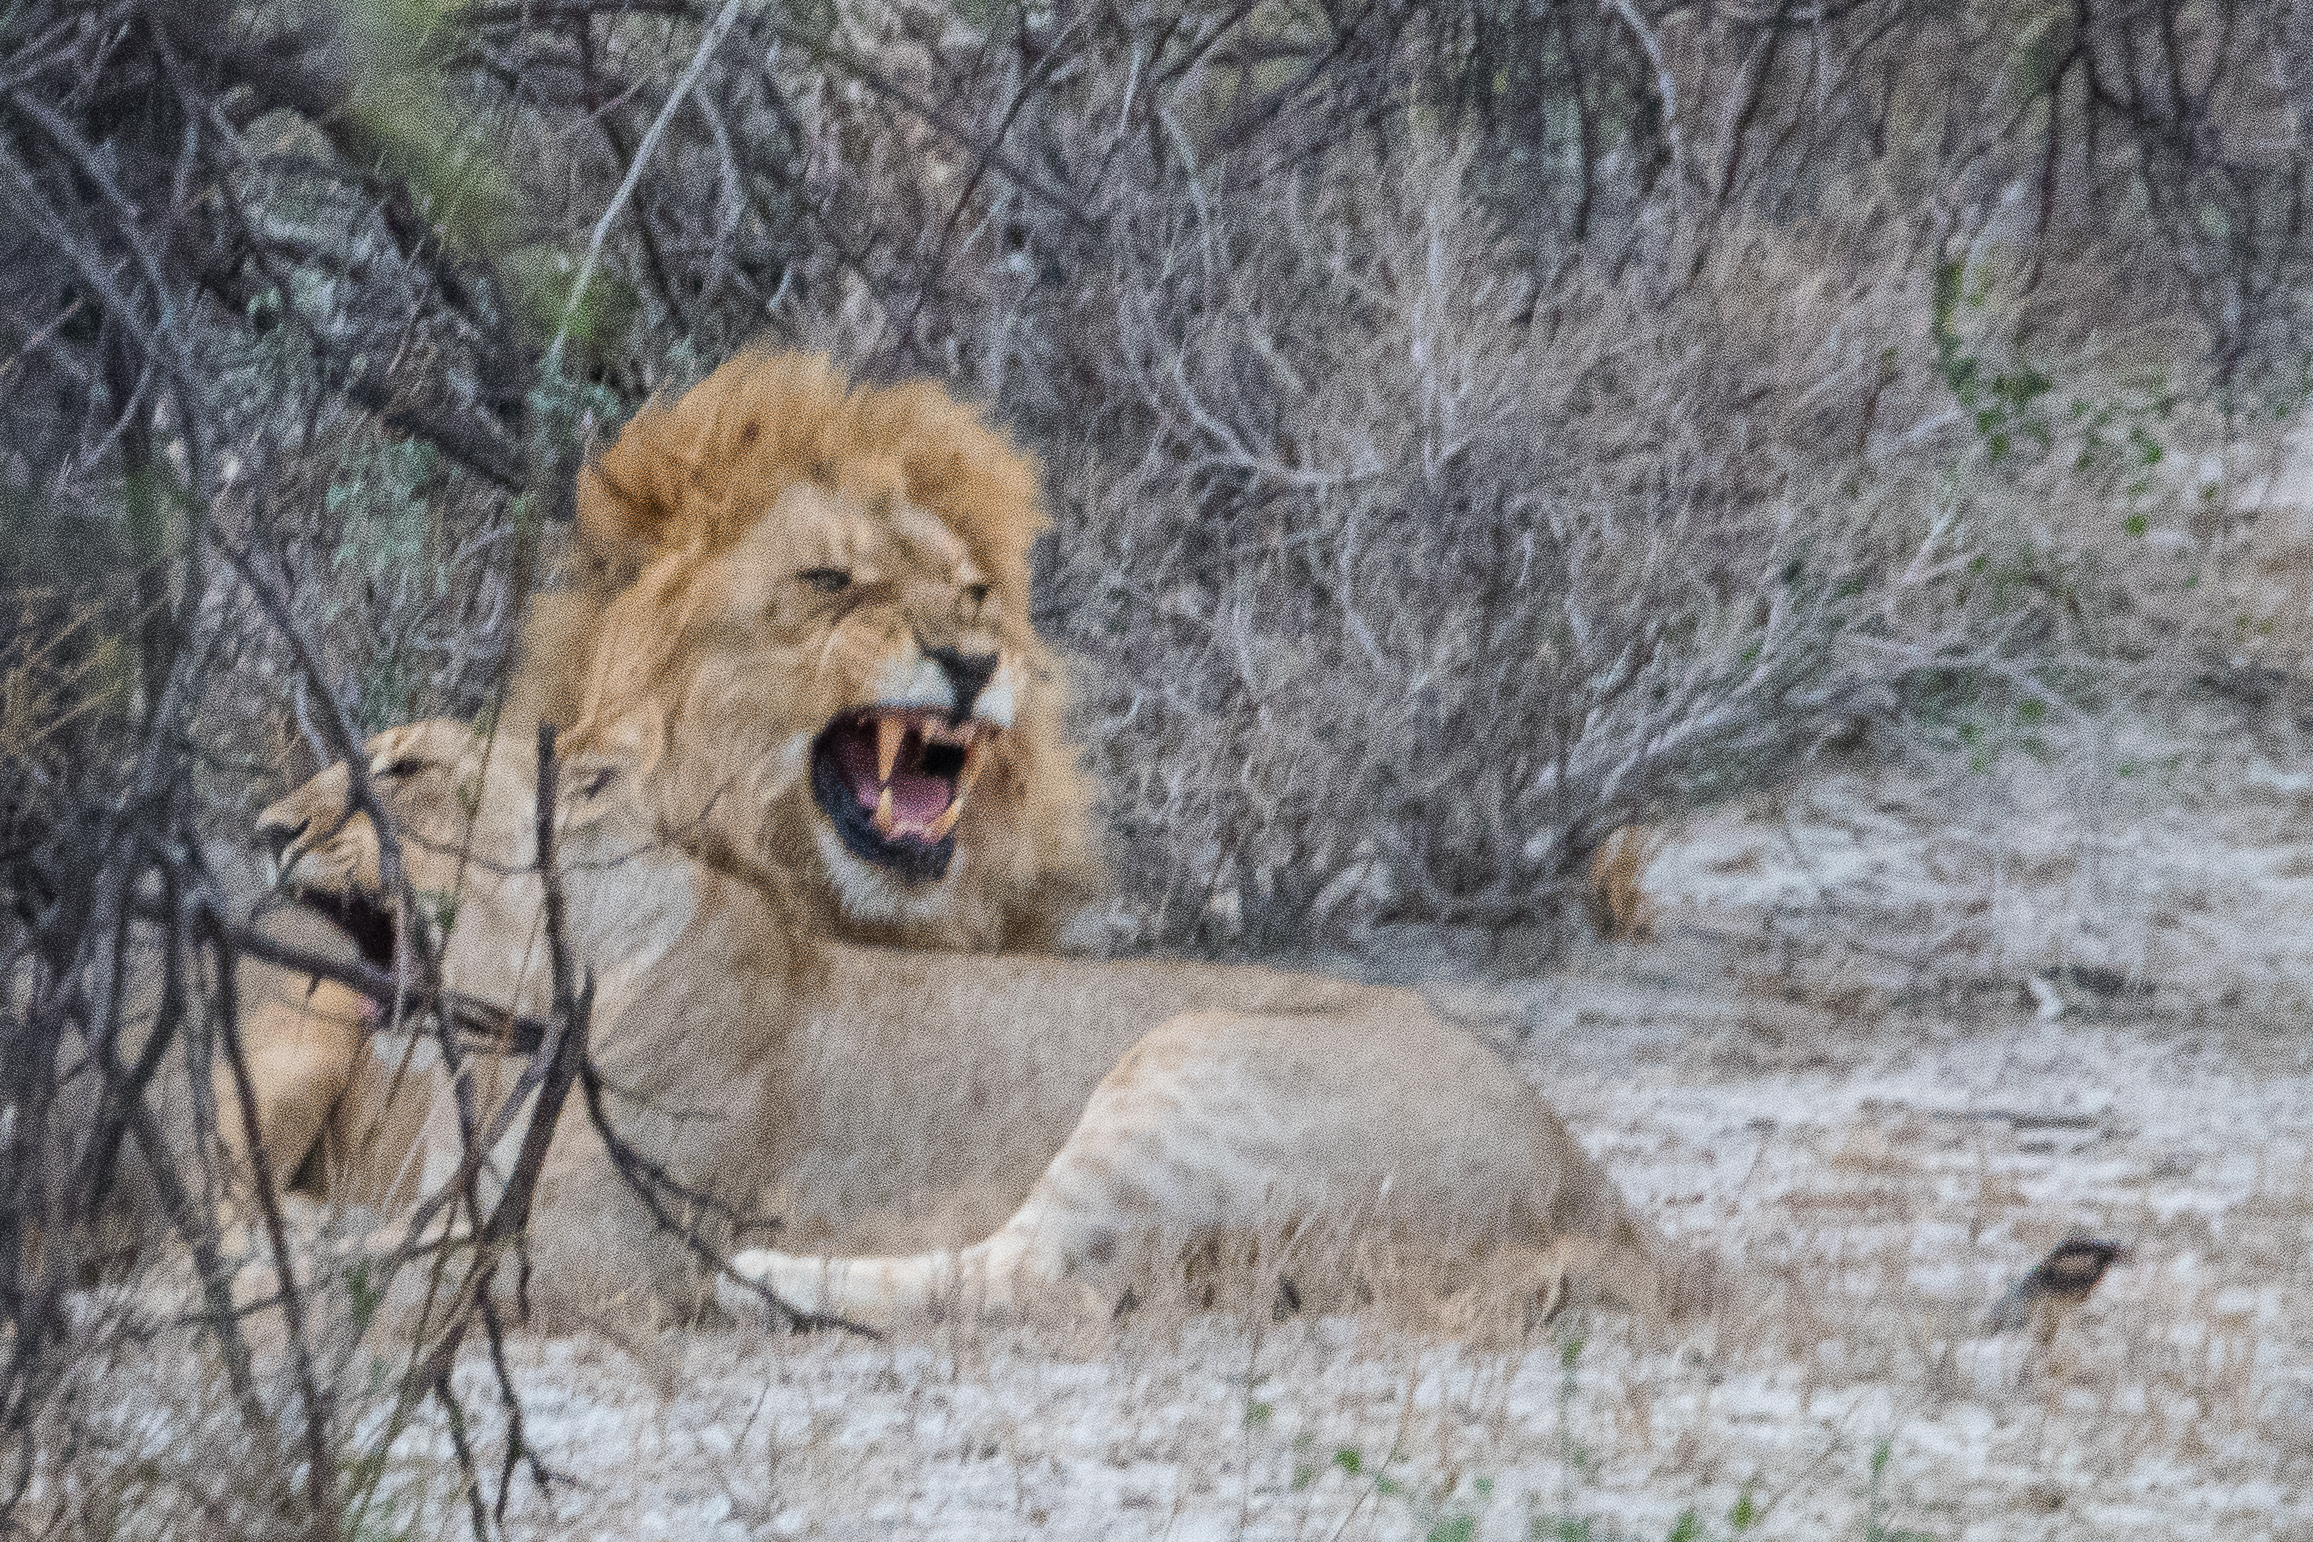 Bien que sa crinière soit encore  hérissée par l'excitation, le lion  rentre la langue et commence à fermer la gueule: le "test" de fécondité est négatif, Onguma Nature Reserve, Namibie.